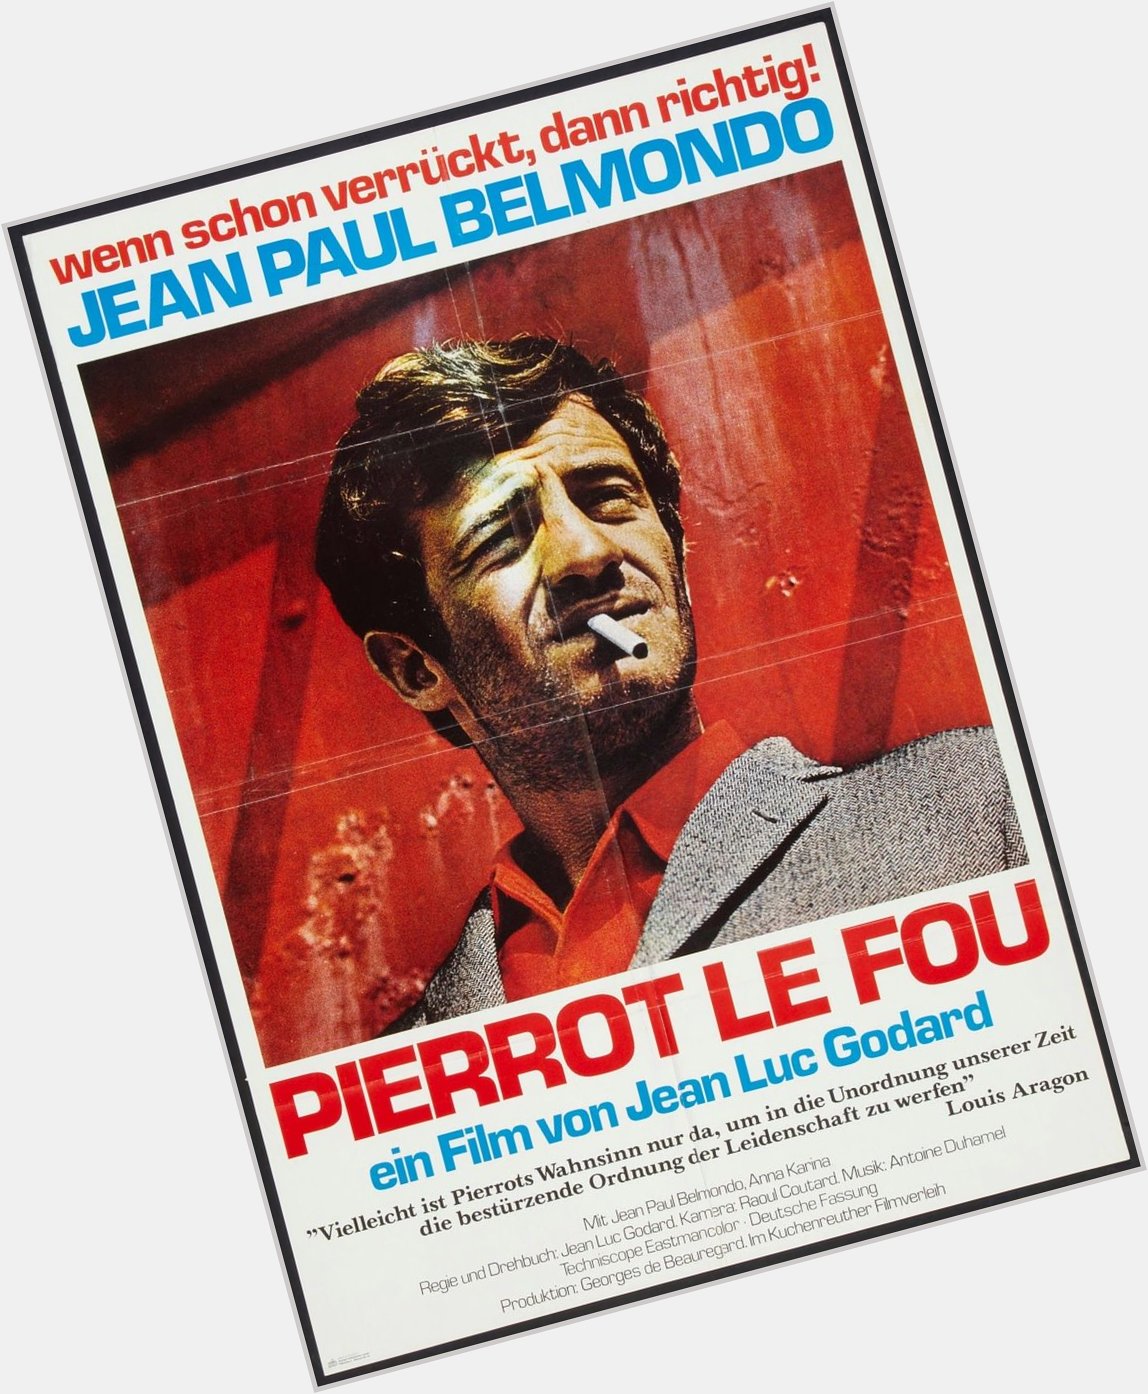 Happy birthday to Jean-Paul Belmondo - PIERROT LE FOU - 1965 - German release poster 